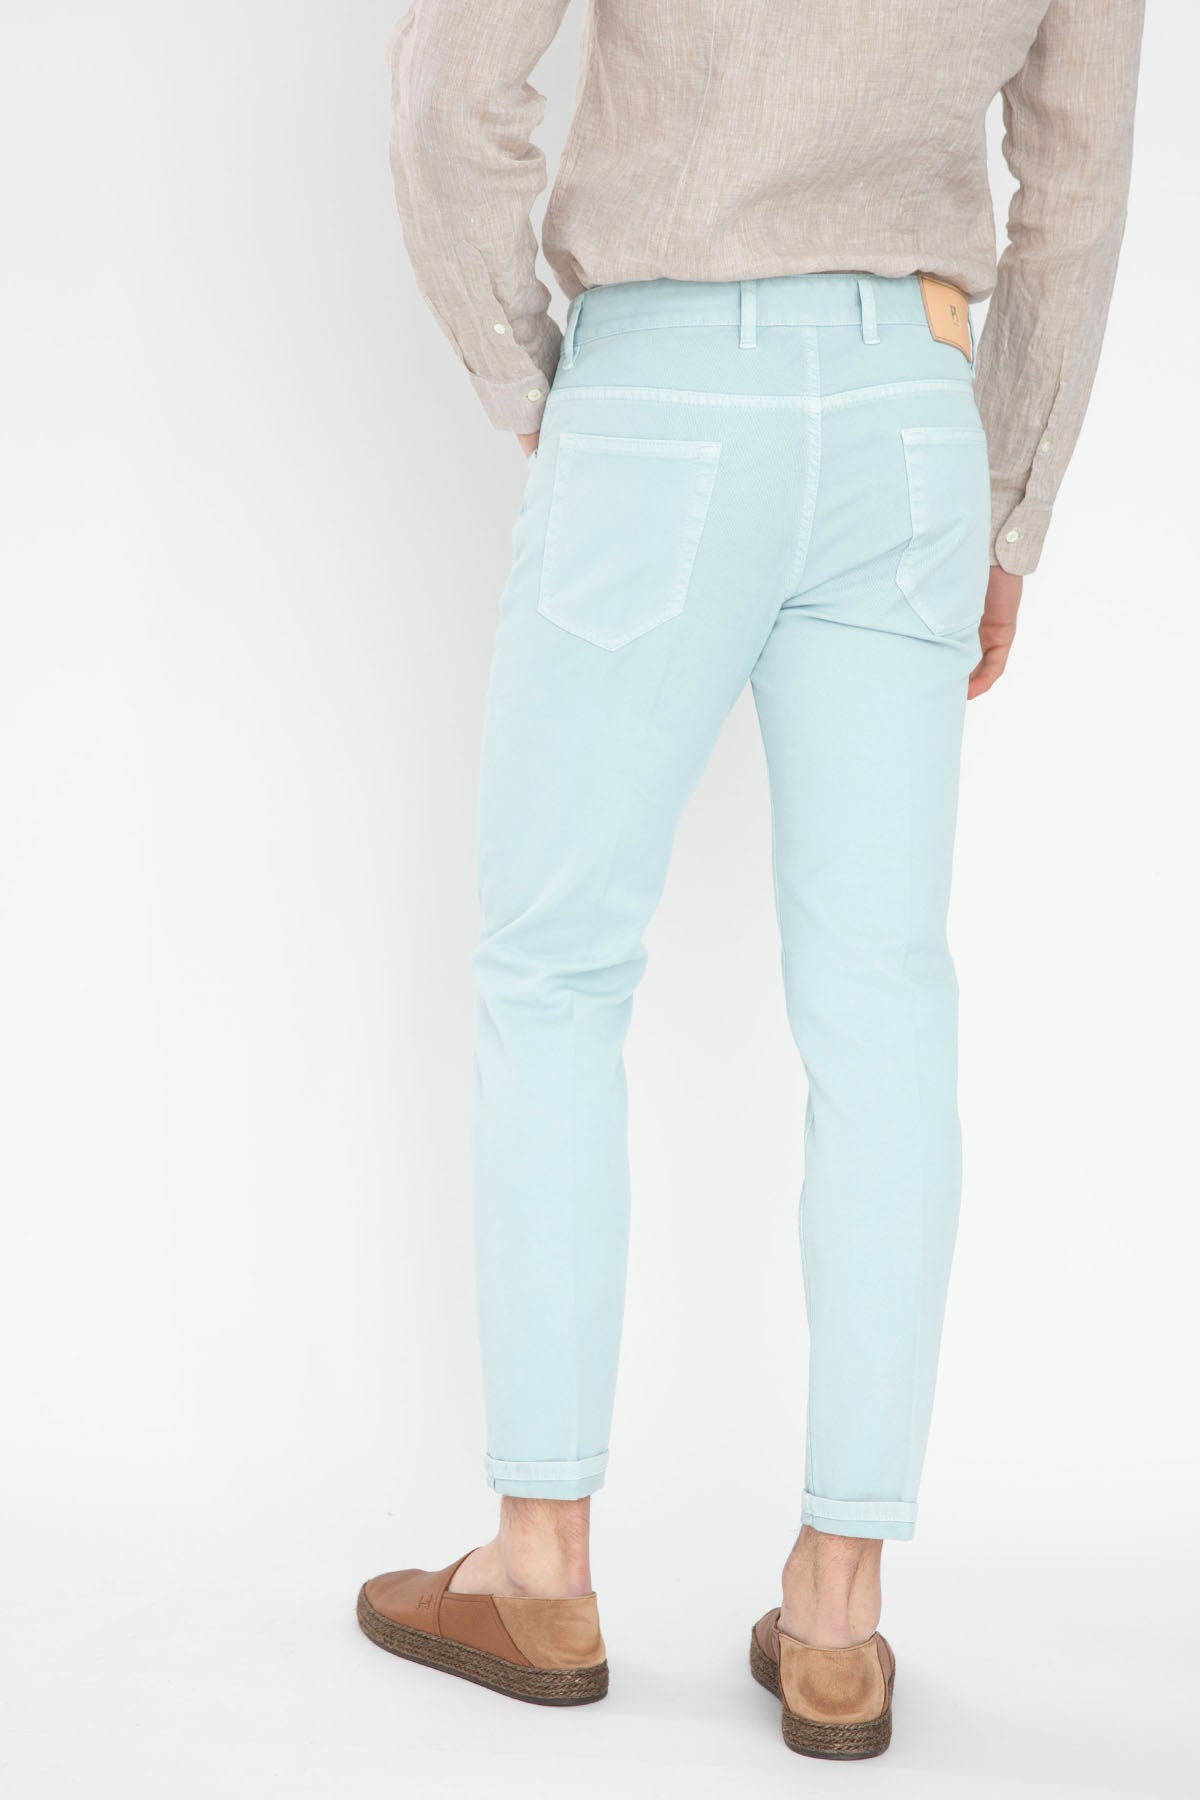 Pantaloni Torino Reggae Fit Jeans-Libas Trendy Fashion Store